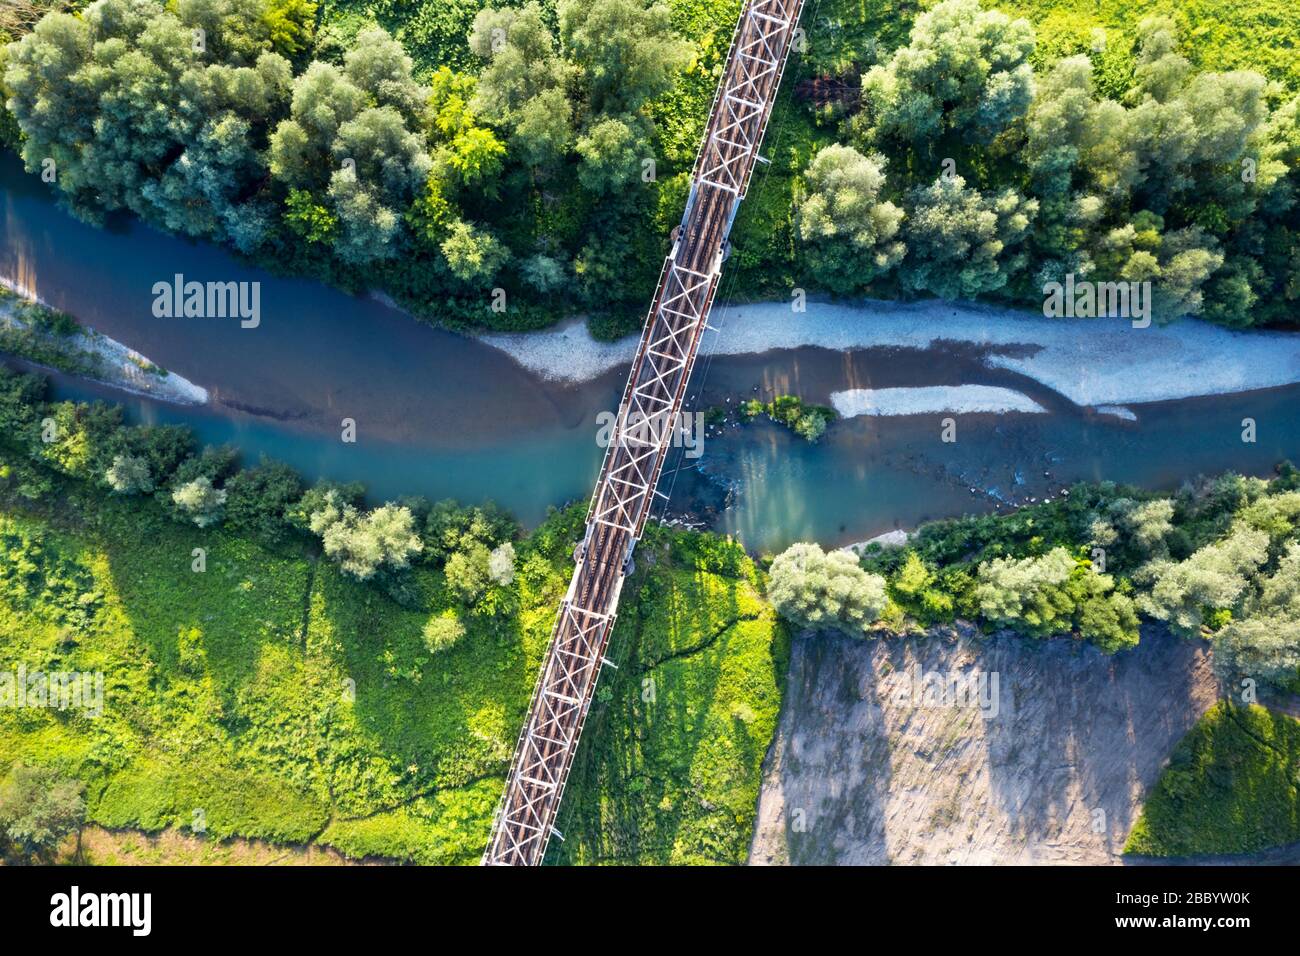 Pont ferroviaire en acier au-dessus d'une rivière. Vue aérienne drone. Photographie de paysage Banque D'Images